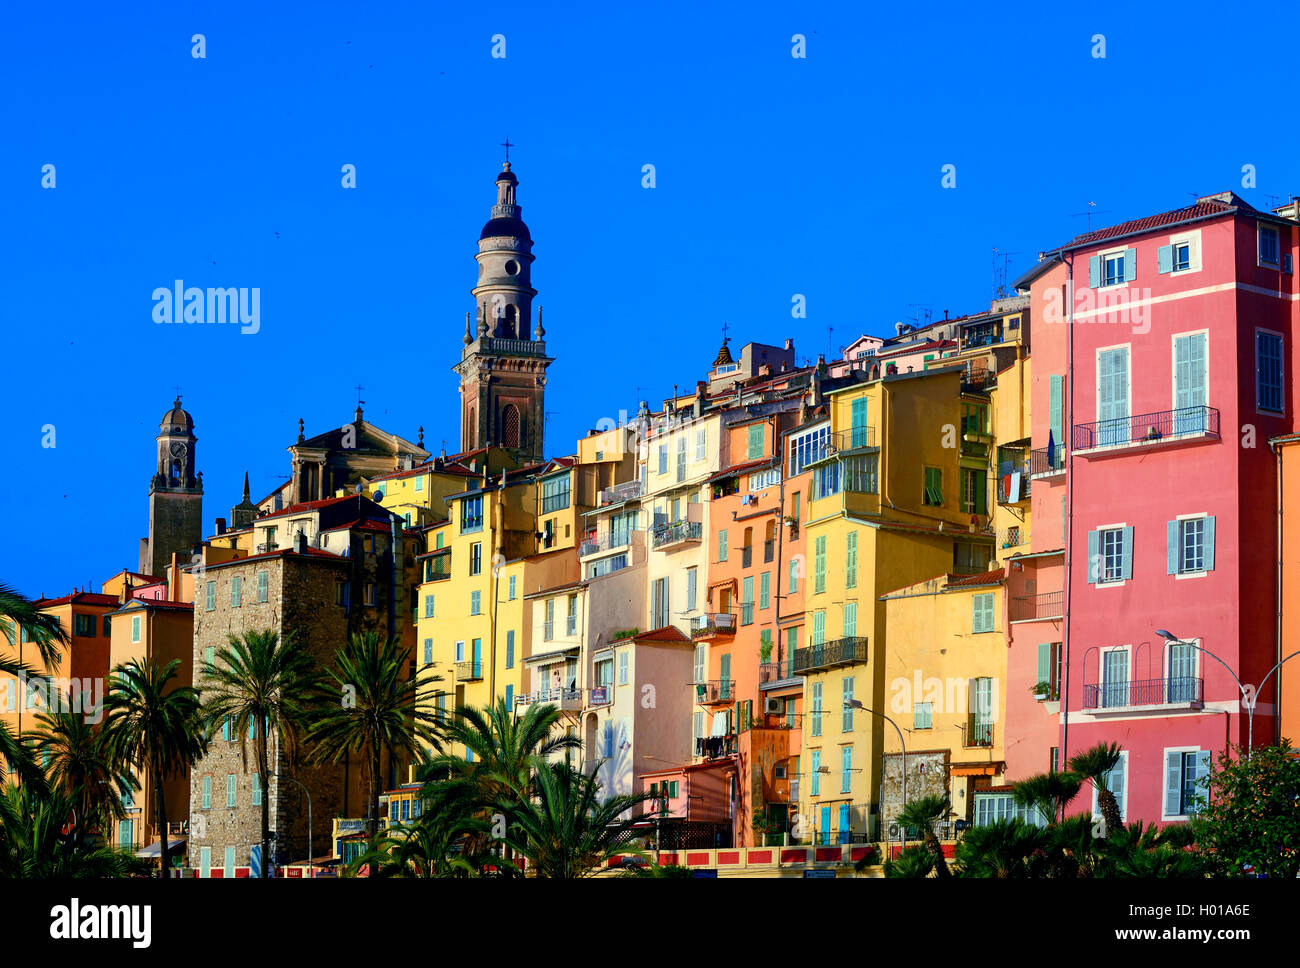 La vieille ville avec des maisons aux couleurs pastel et de la basilique Saint Michel, France, Alpes Maritimes, côtes D. Azur, Menton Banque D'Images